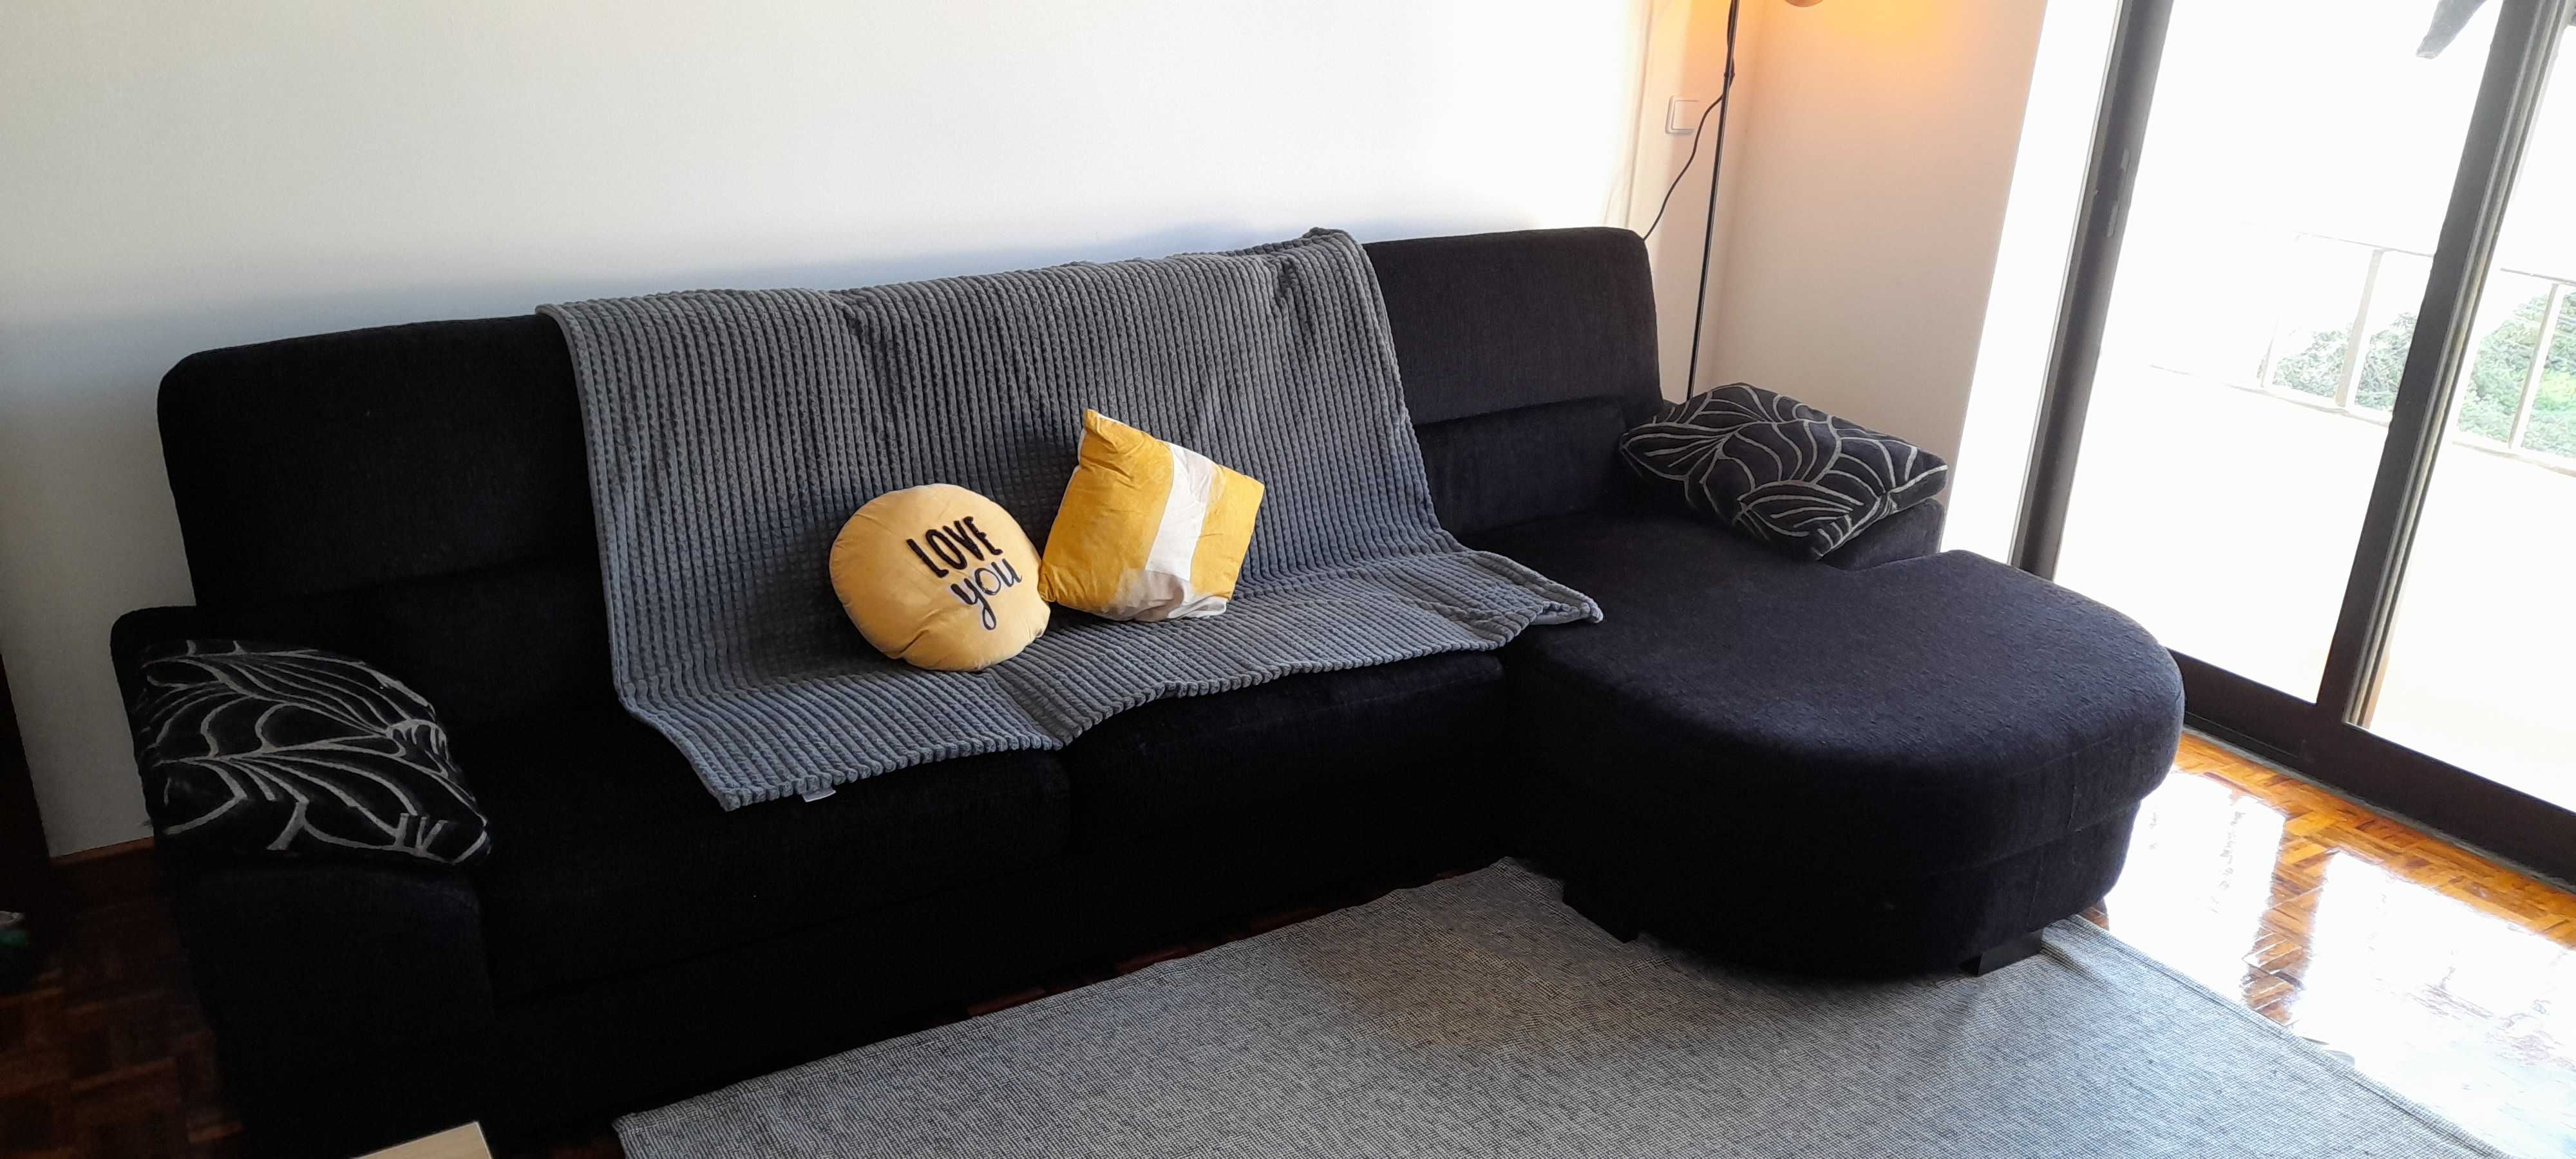 OPORTUNIDADE: lindo sofá chaise long preto (excelente estado)